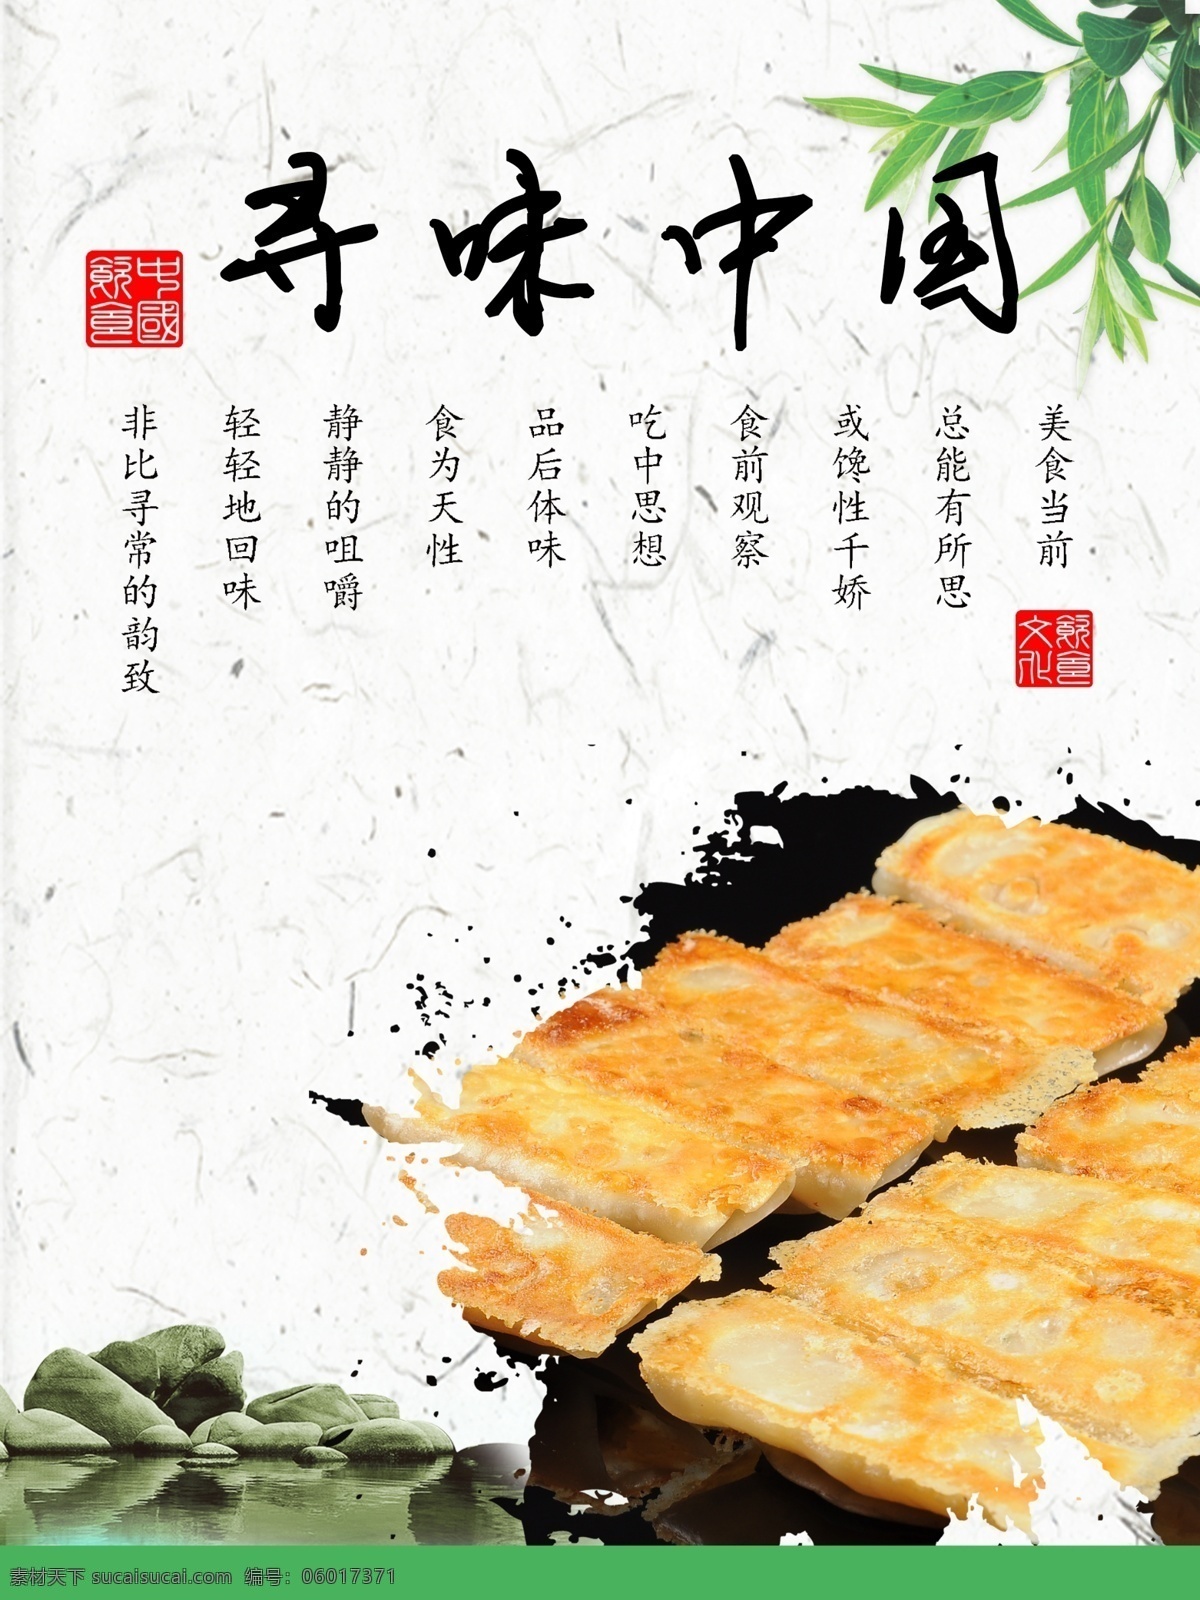 寻味中国 中国 饮食文化 美食 传统文化 海报